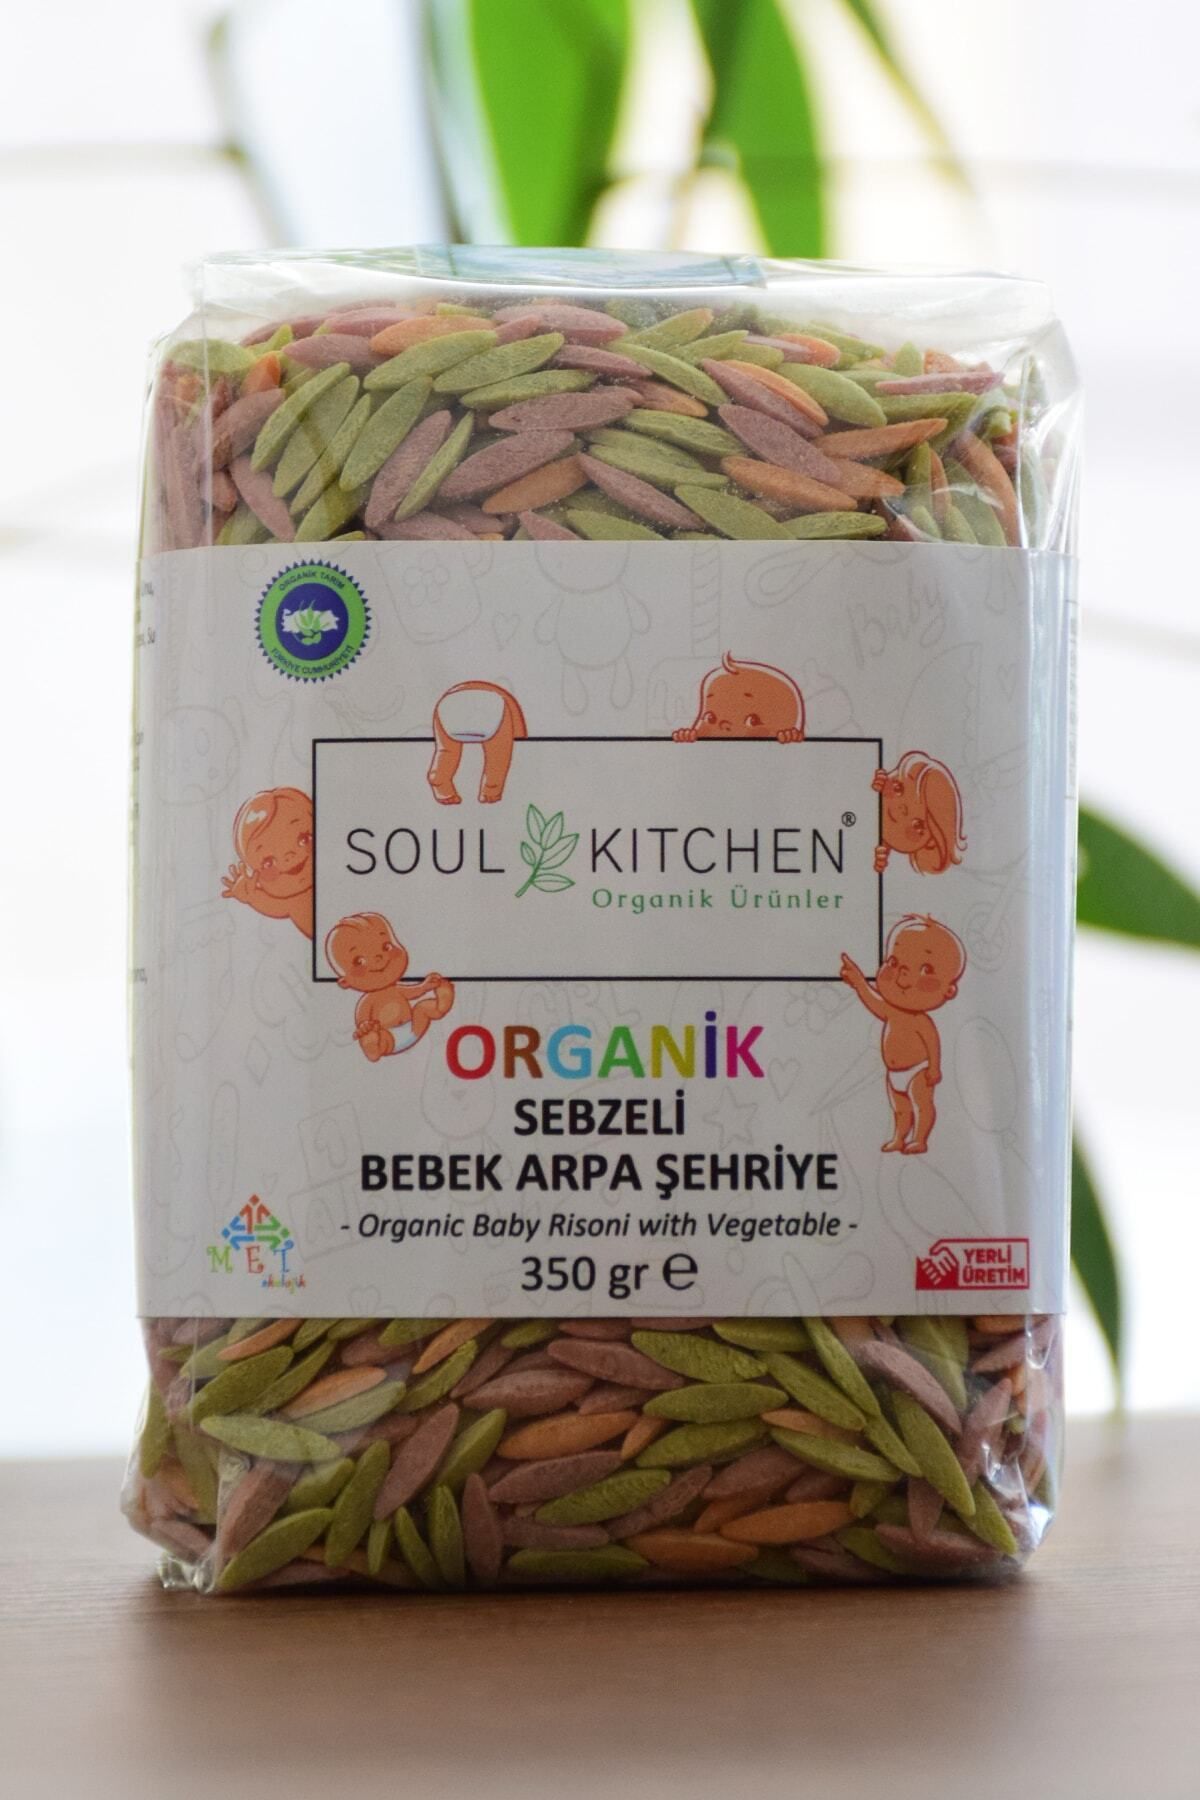 Soul Kitchen Organik Ürünler Organik Sebzeli Bebek Arpa Şehriye 350gr - Tuzsuz